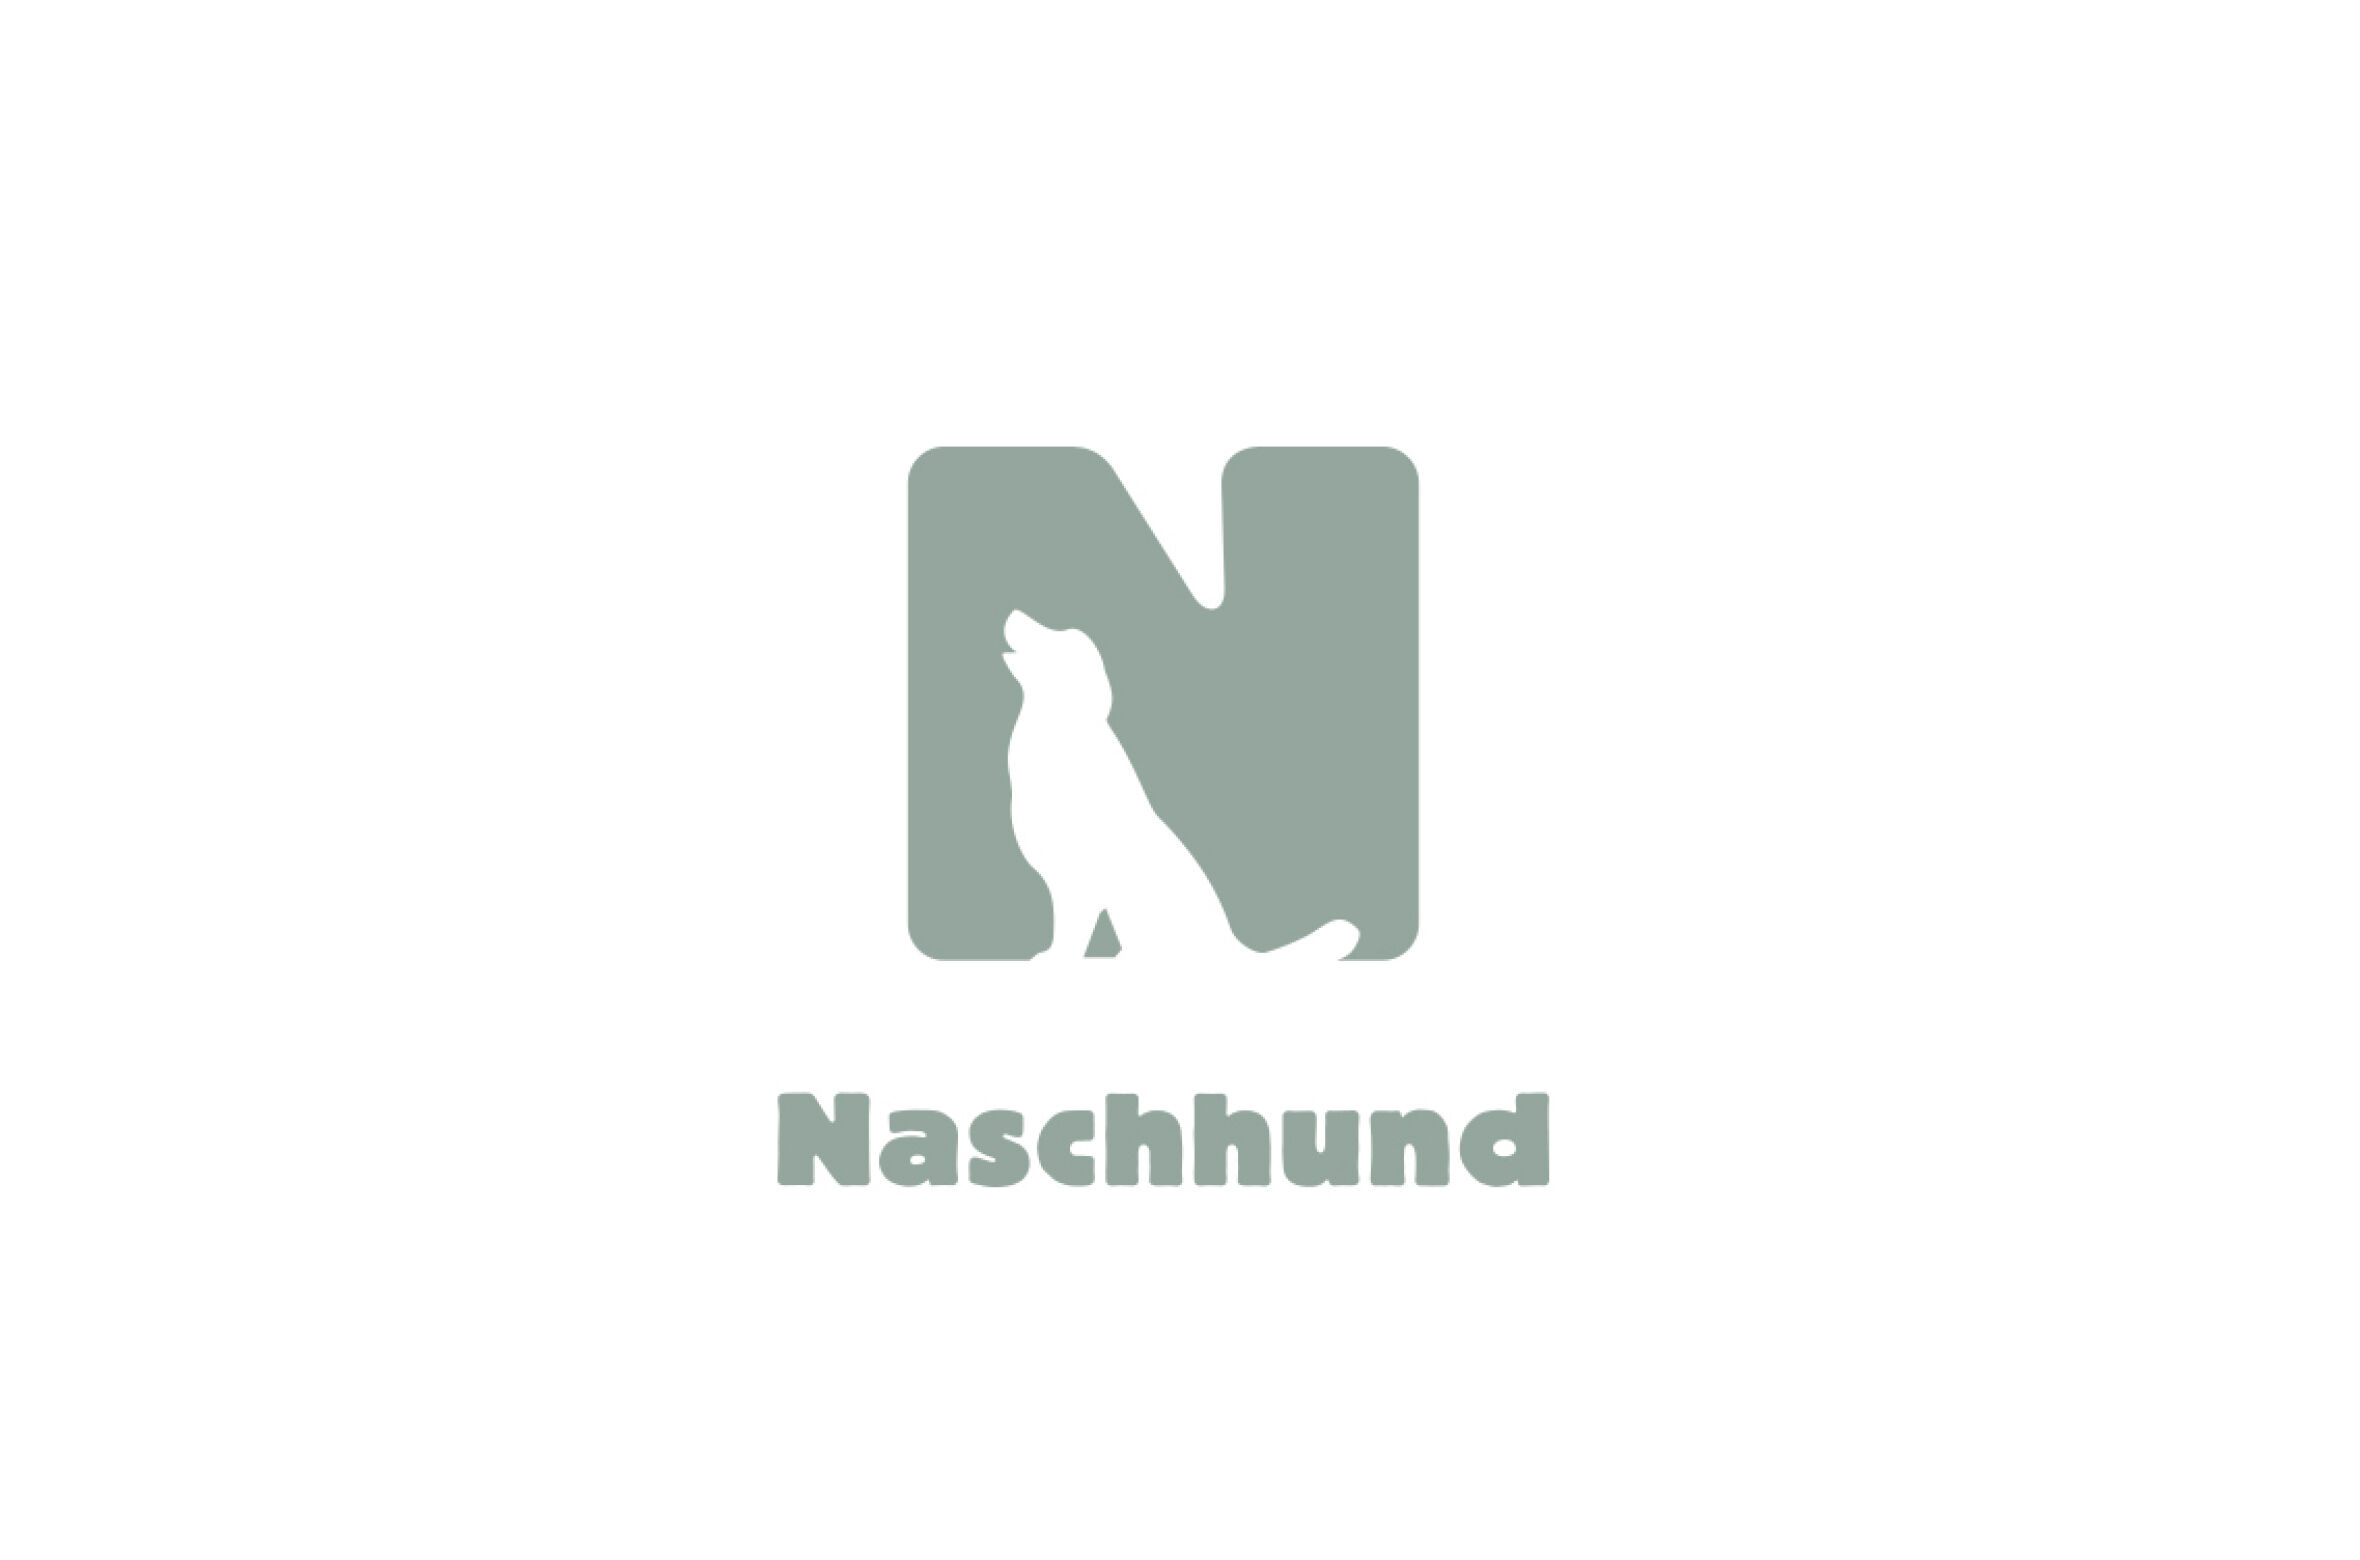 Logo_Naschhund_©zurgams.jpg